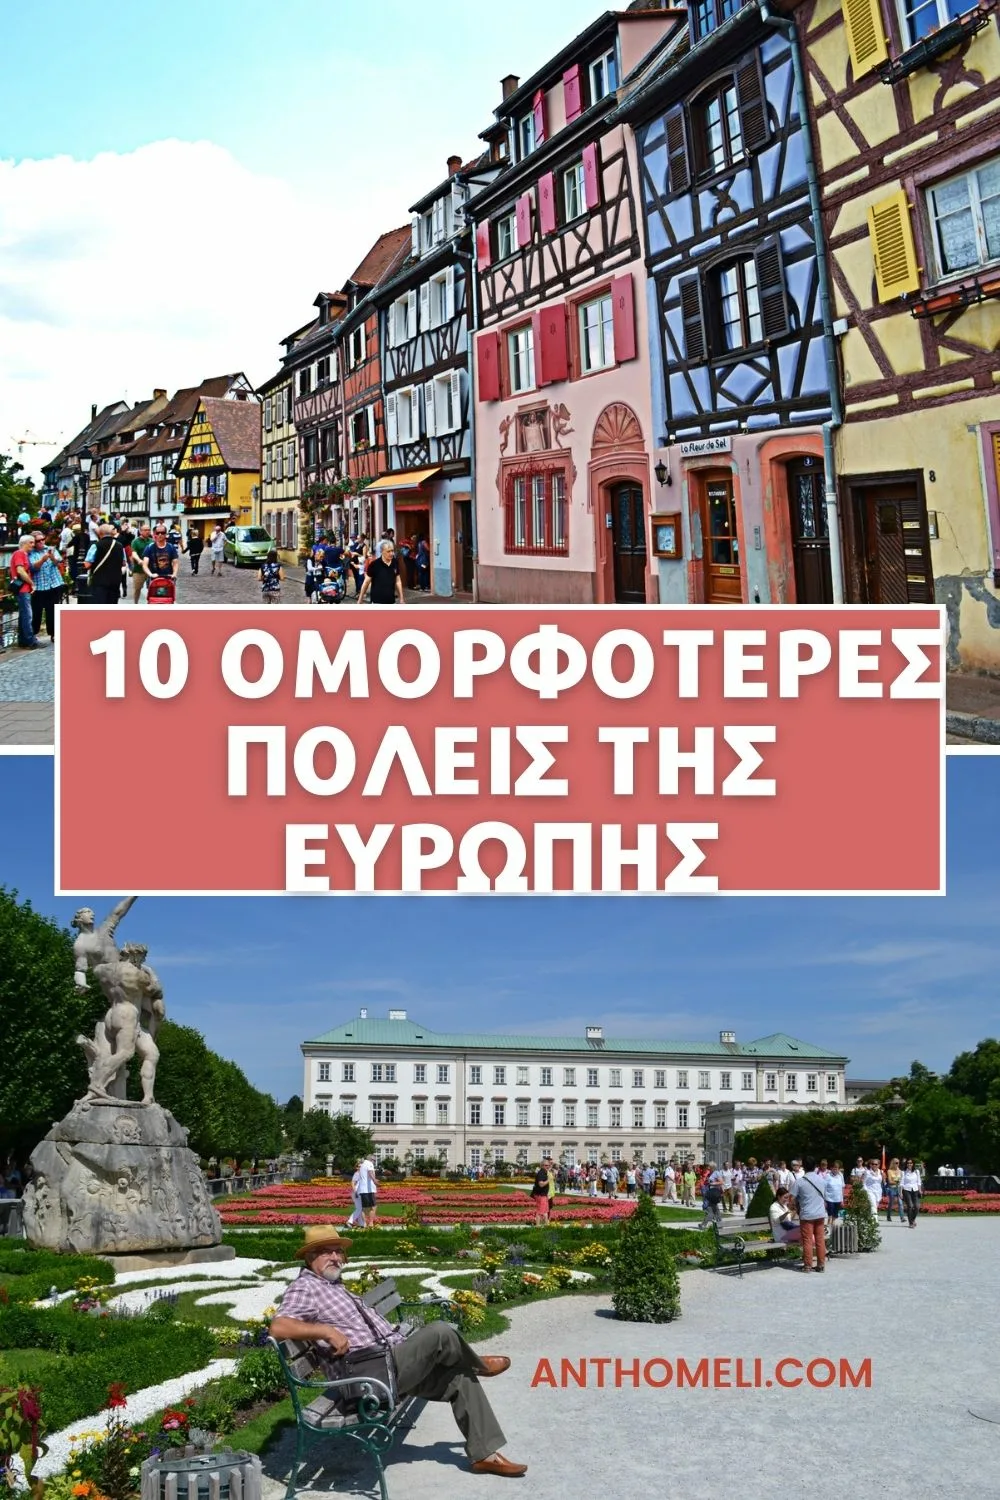 Η λίστα με τις 10 πιο όμορφες πόλεις της Ευρώπης είναι έτοιμη! Στρασβούργο, Κρακοβία, Βαρκελώνη, Βενετία, Κολμάρ, Σάλτσμπουργκ, Μιλάνο, Μόναχο, Ίνσμπρουκ και Αμβούργο.